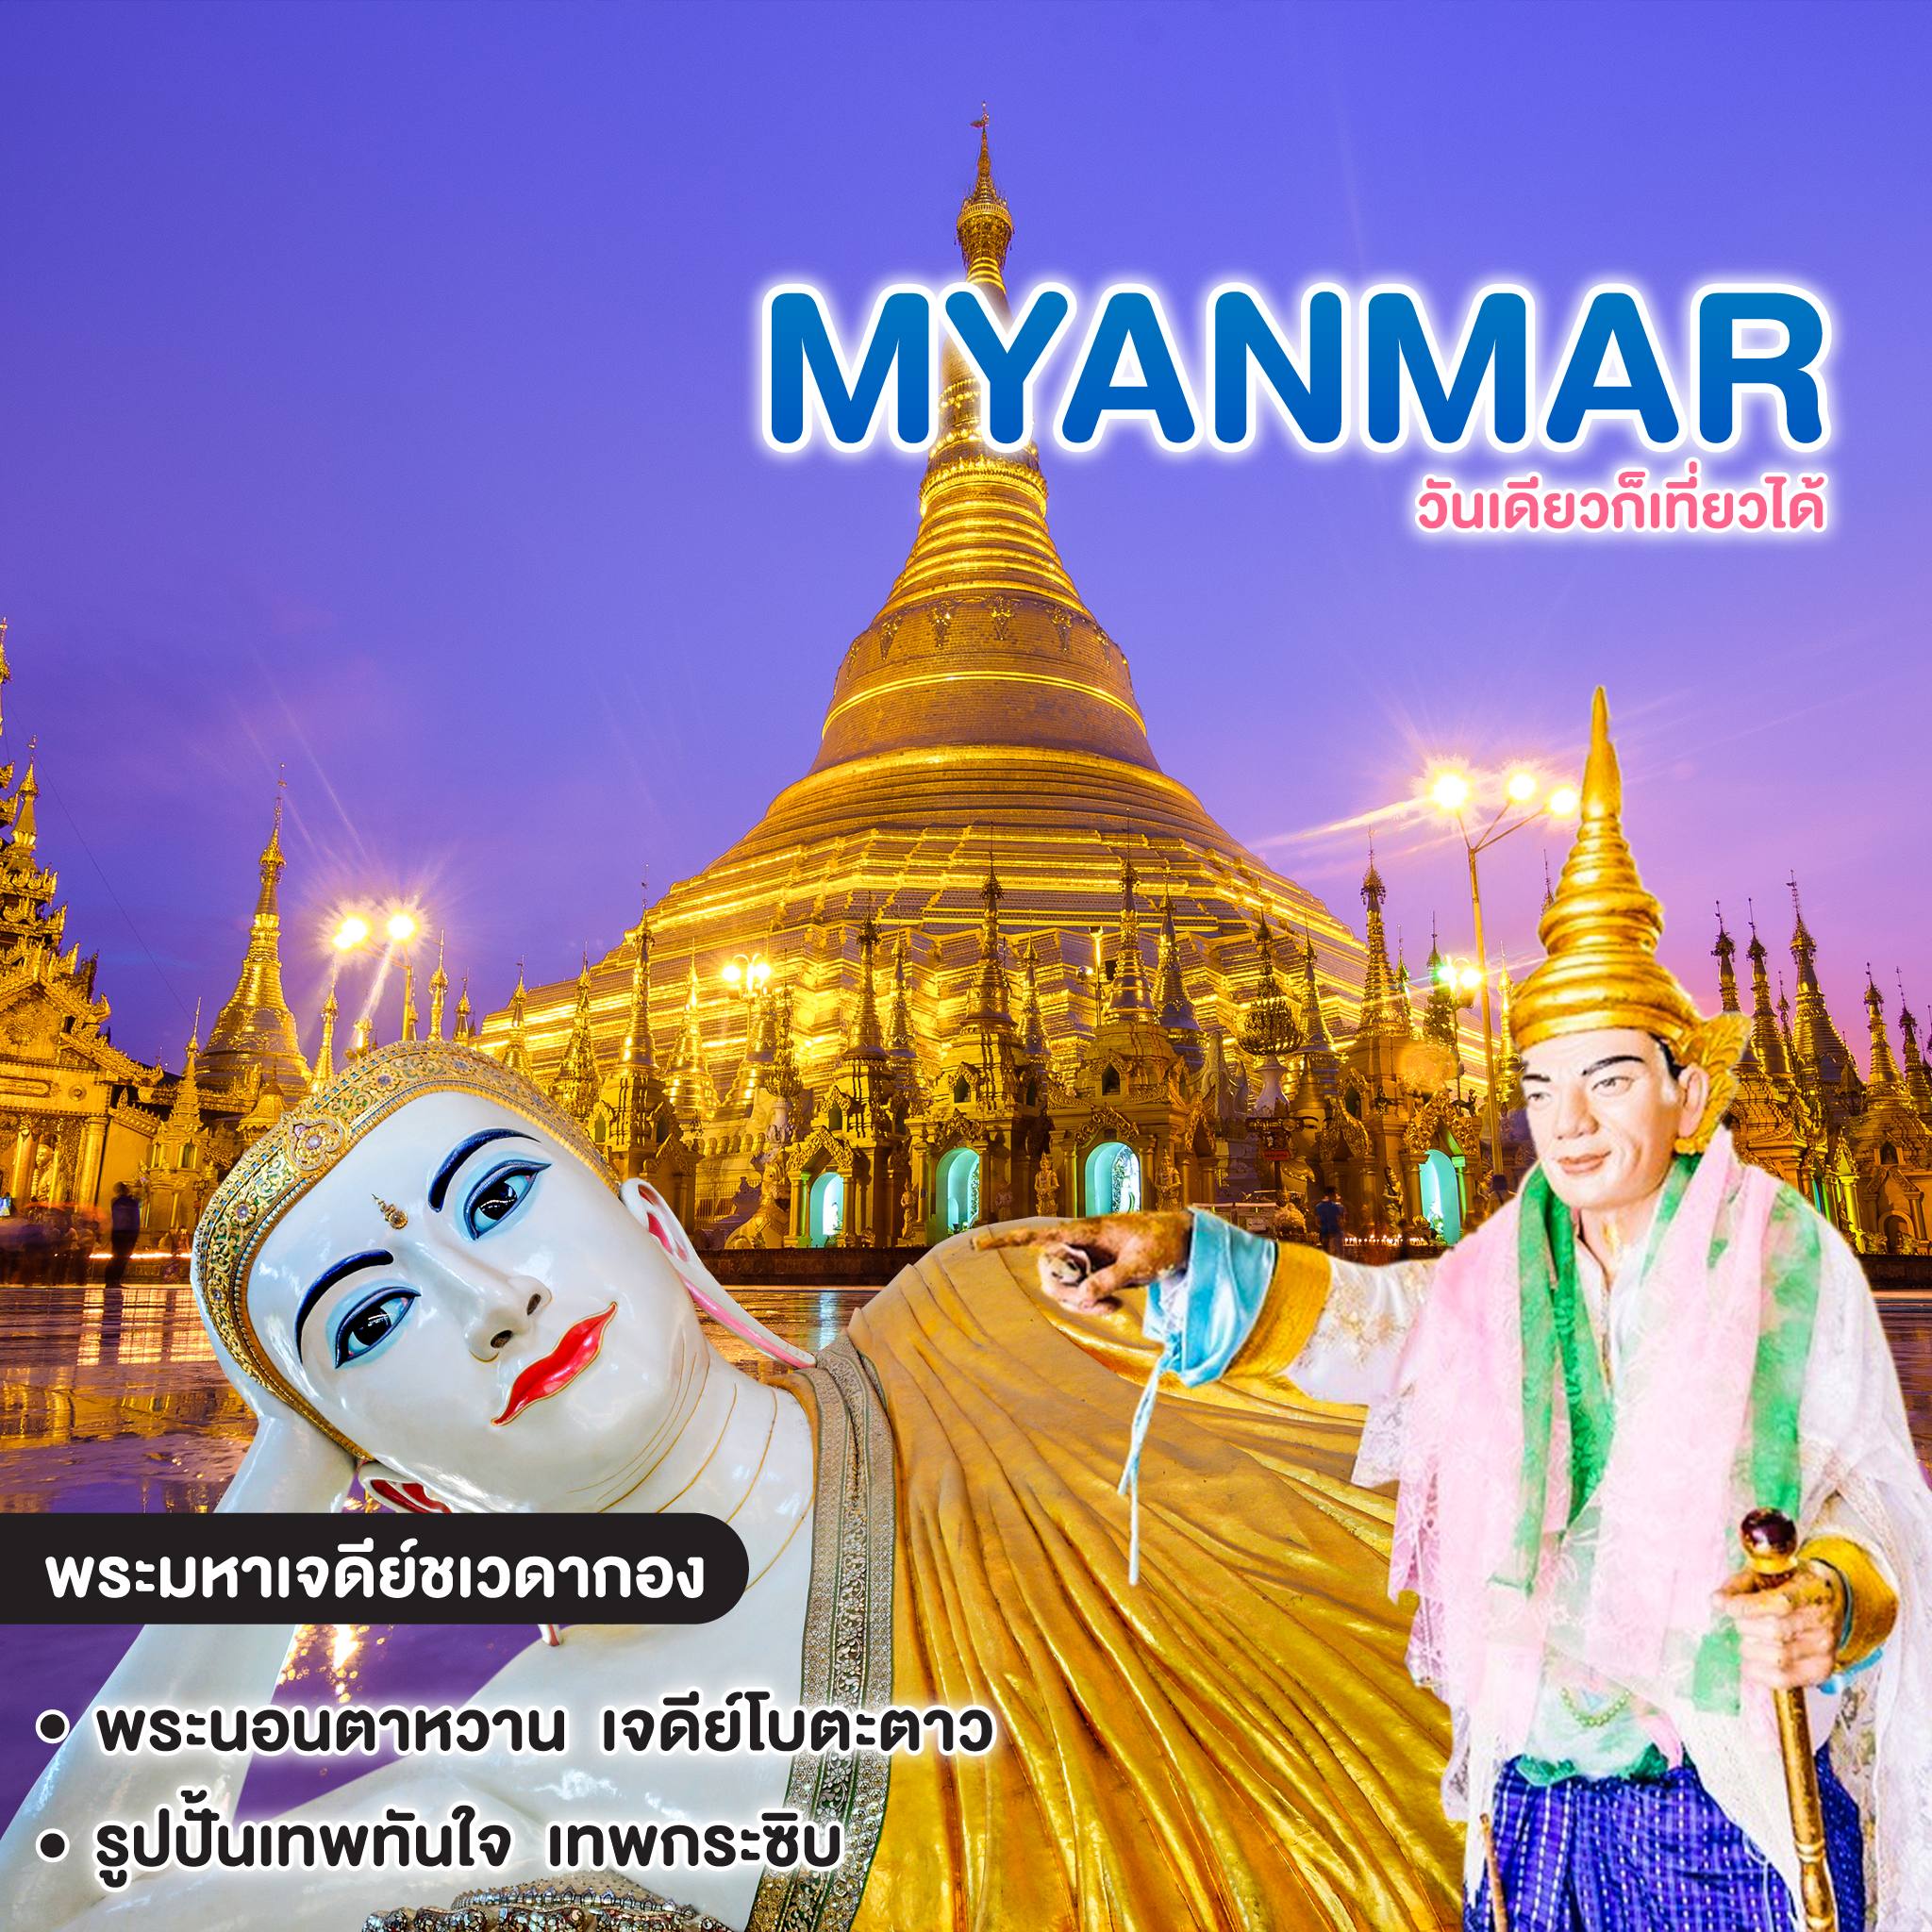 ทัวร์พม่า Premium MYANMAR วันเดียวก็เที่ยวได้ #สี่คูณร้อย